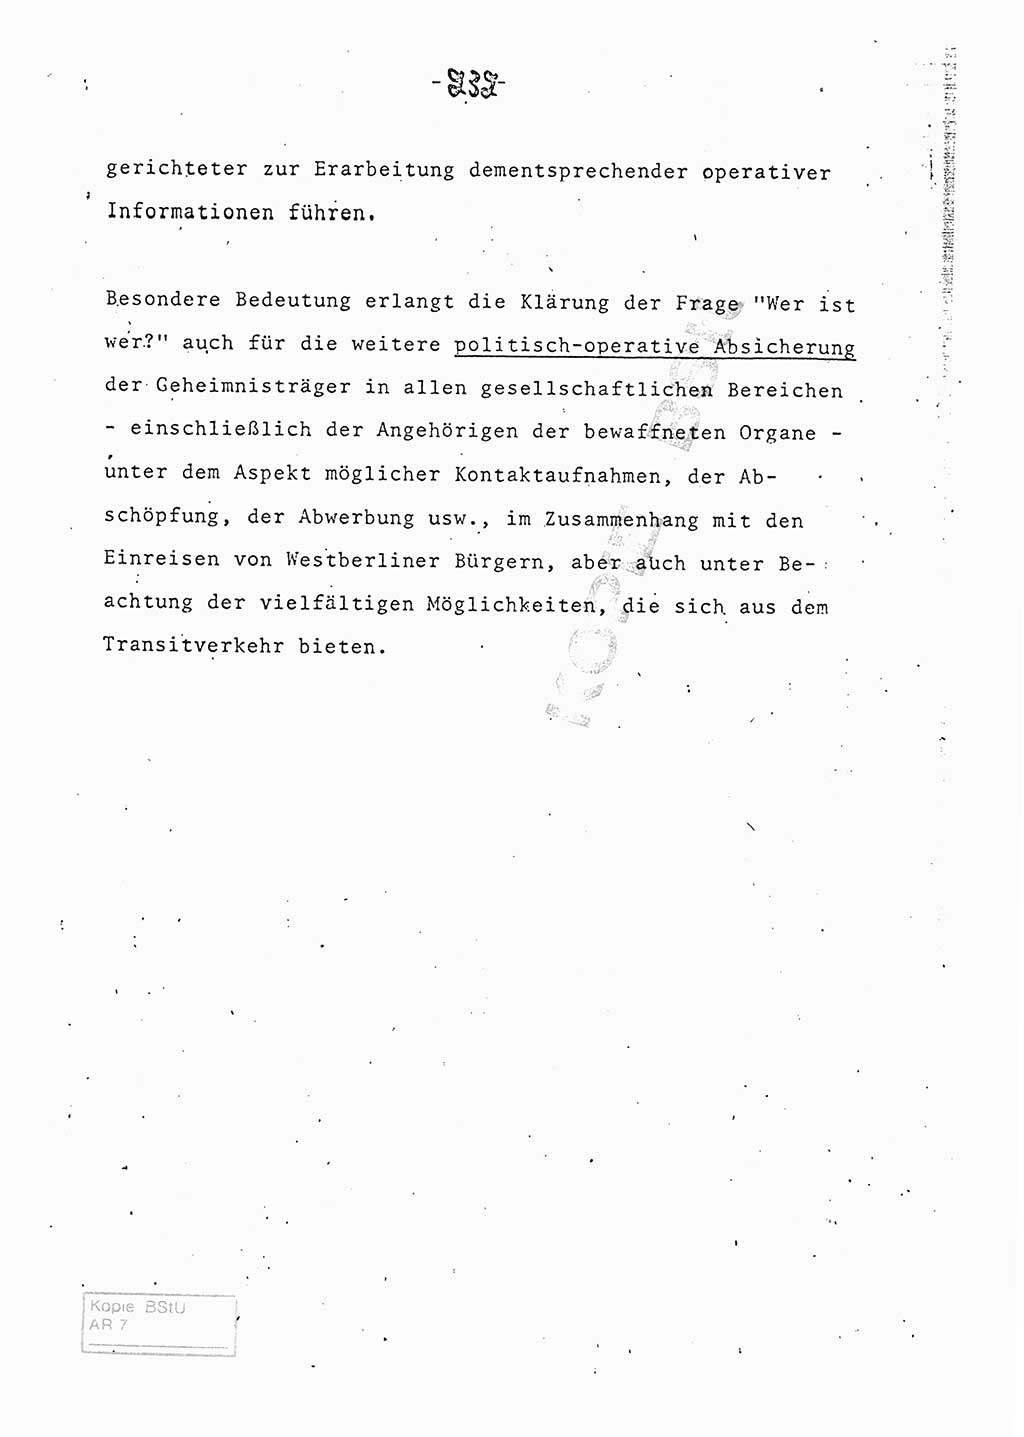 Referat (Entwurf) des Genossen Minister (Generaloberst Erich Mielke) auf der Dienstkonferenz 1972, Ministerium für Staatssicherheit (MfS) [Deutsche Demokratische Republik (DDR)], Der Minister, Geheime Verschlußsache (GVS) 008-150/72, Berlin 25.2.1972, Seite 232 (Ref. Entw. DK MfS DDR Min. GVS 008-150/72 1972, S. 232)